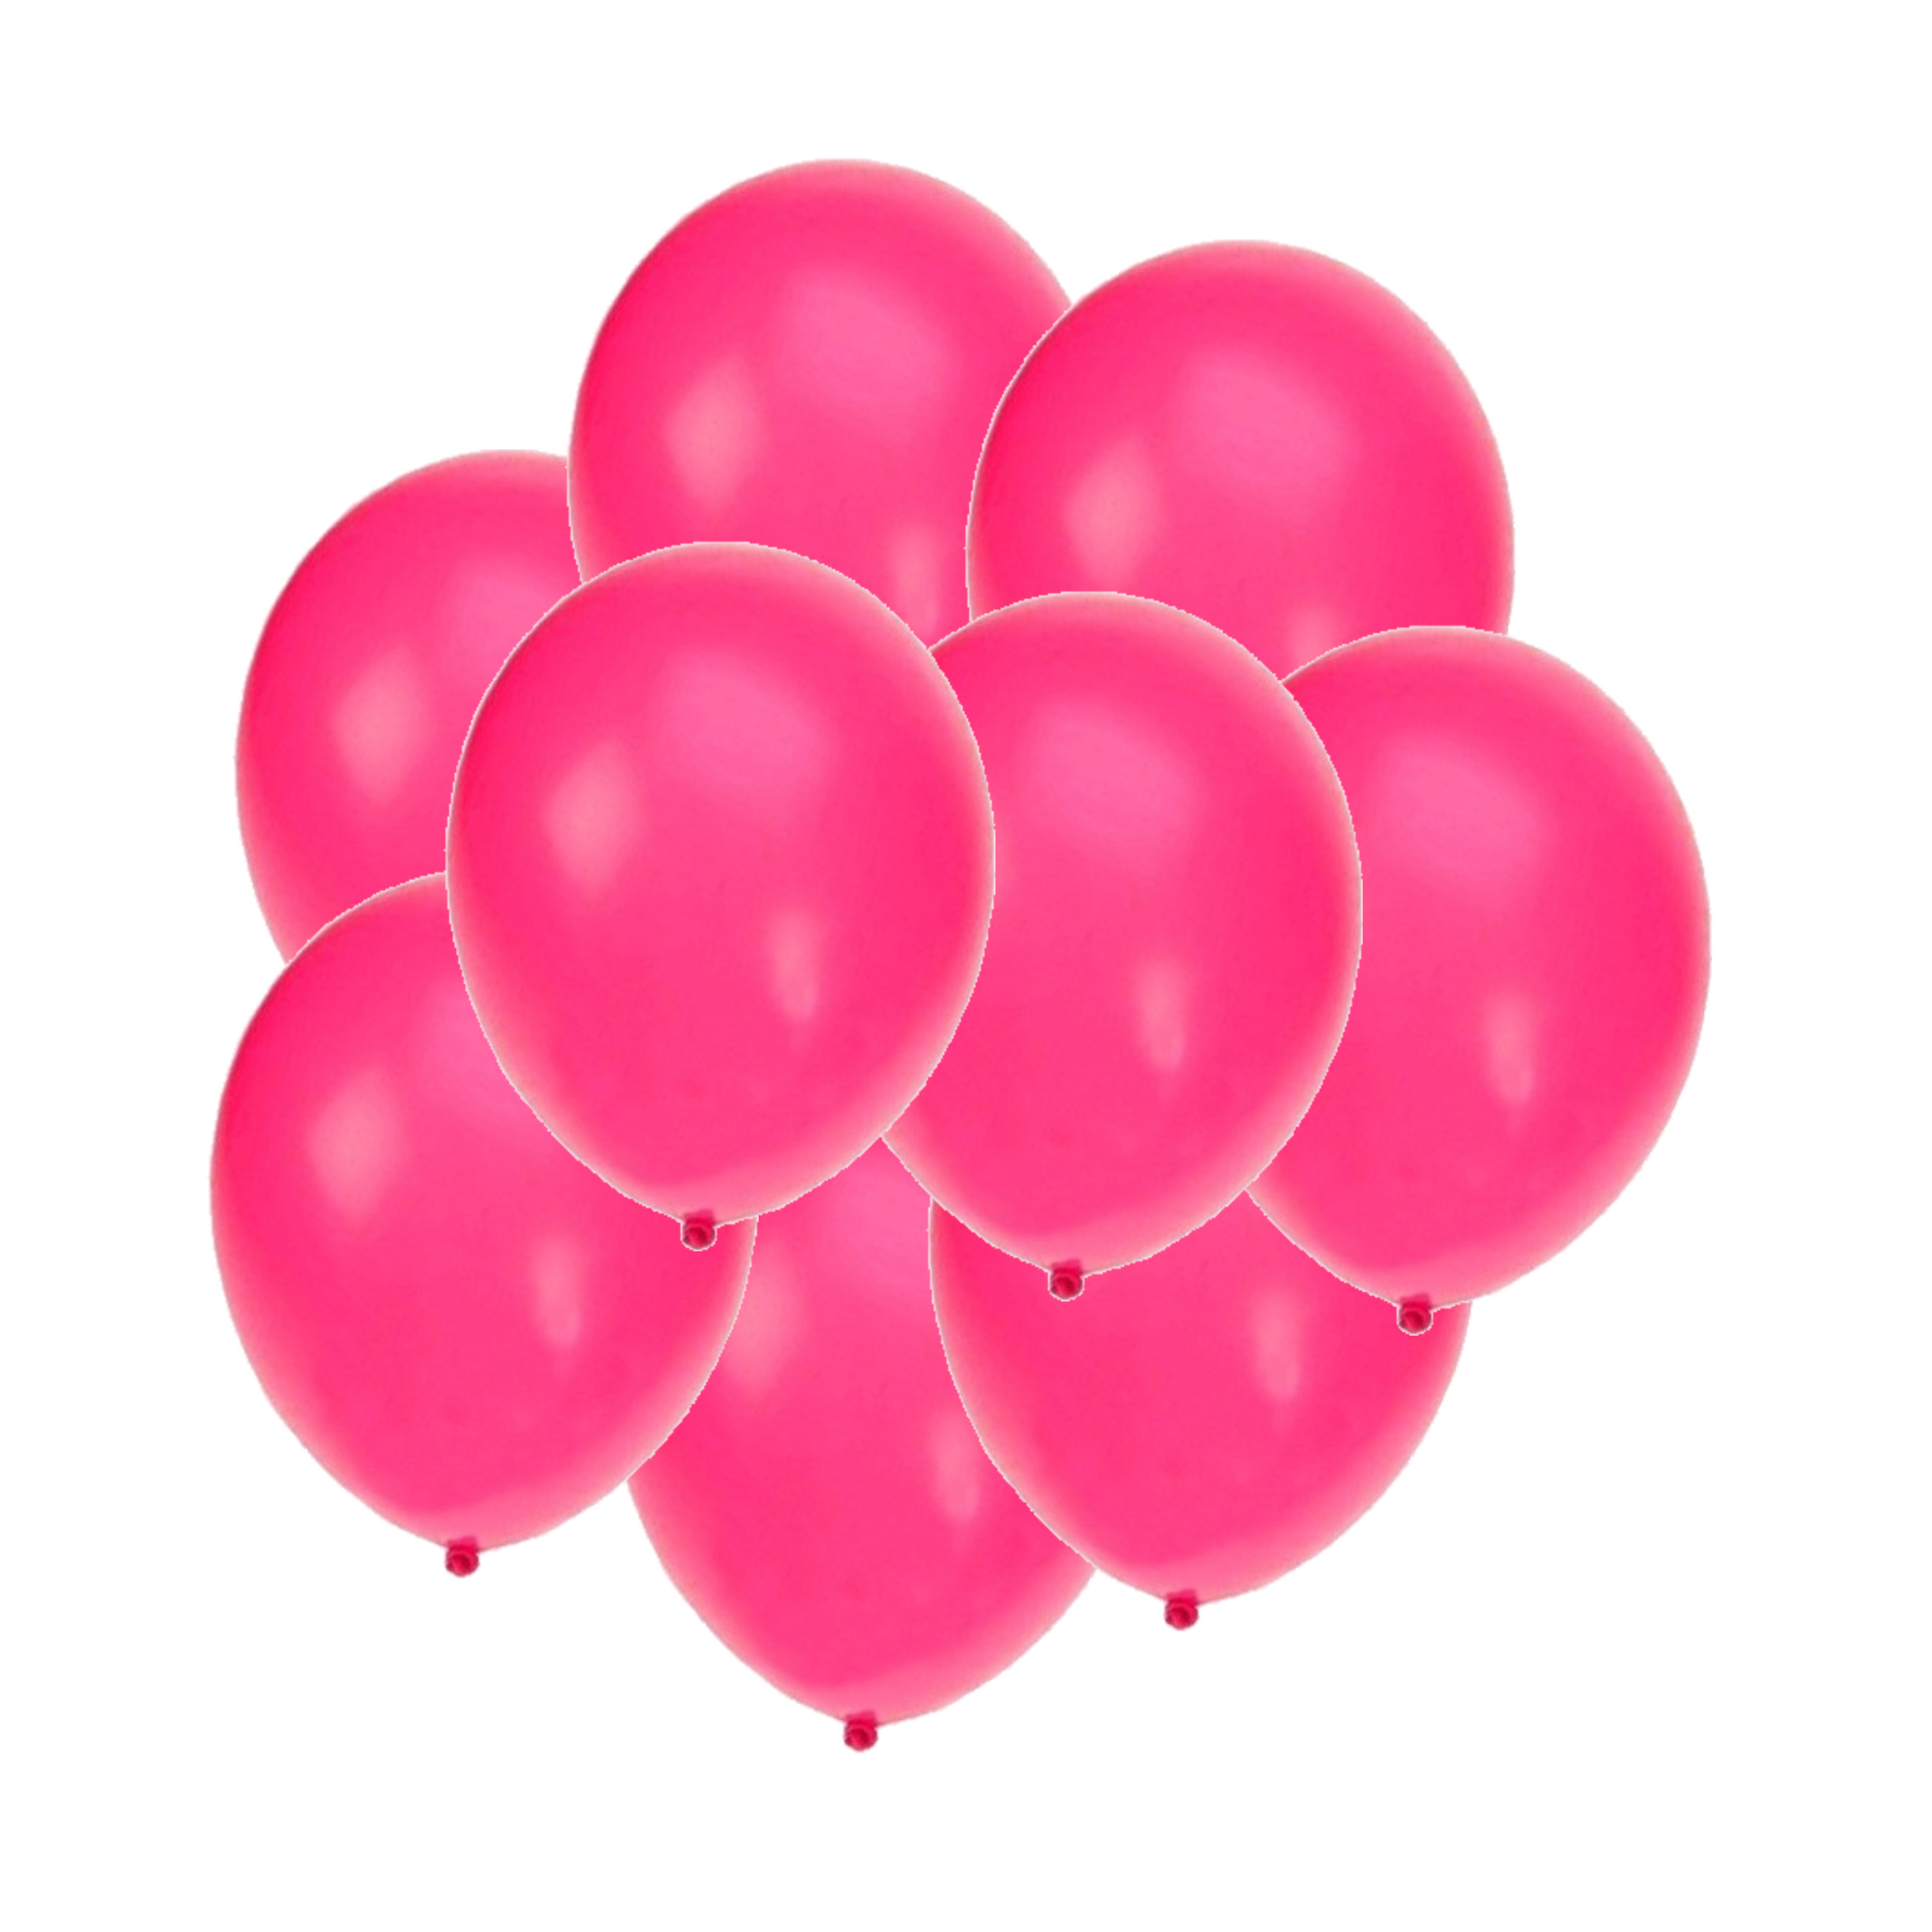 Bellatio decorations - Ballonnen knalroze/felroze 50x stuks rond 27 cm Top Merken Winkel